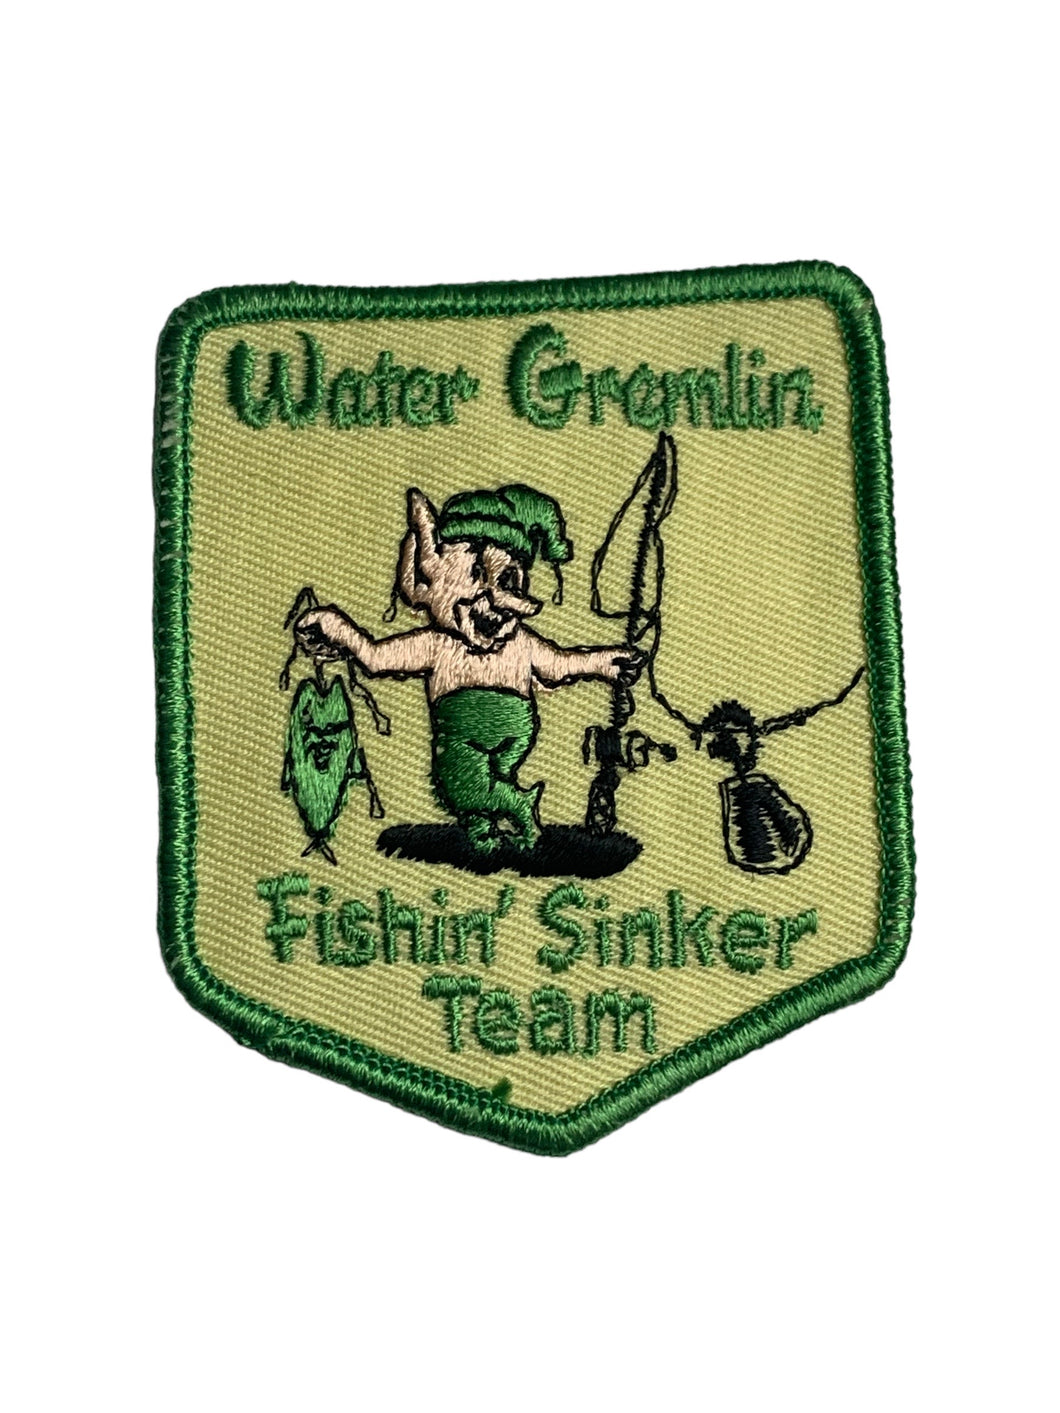 WATER GREMLIN FISHIN SINKER TEAM Vintage Patch • Green Trim